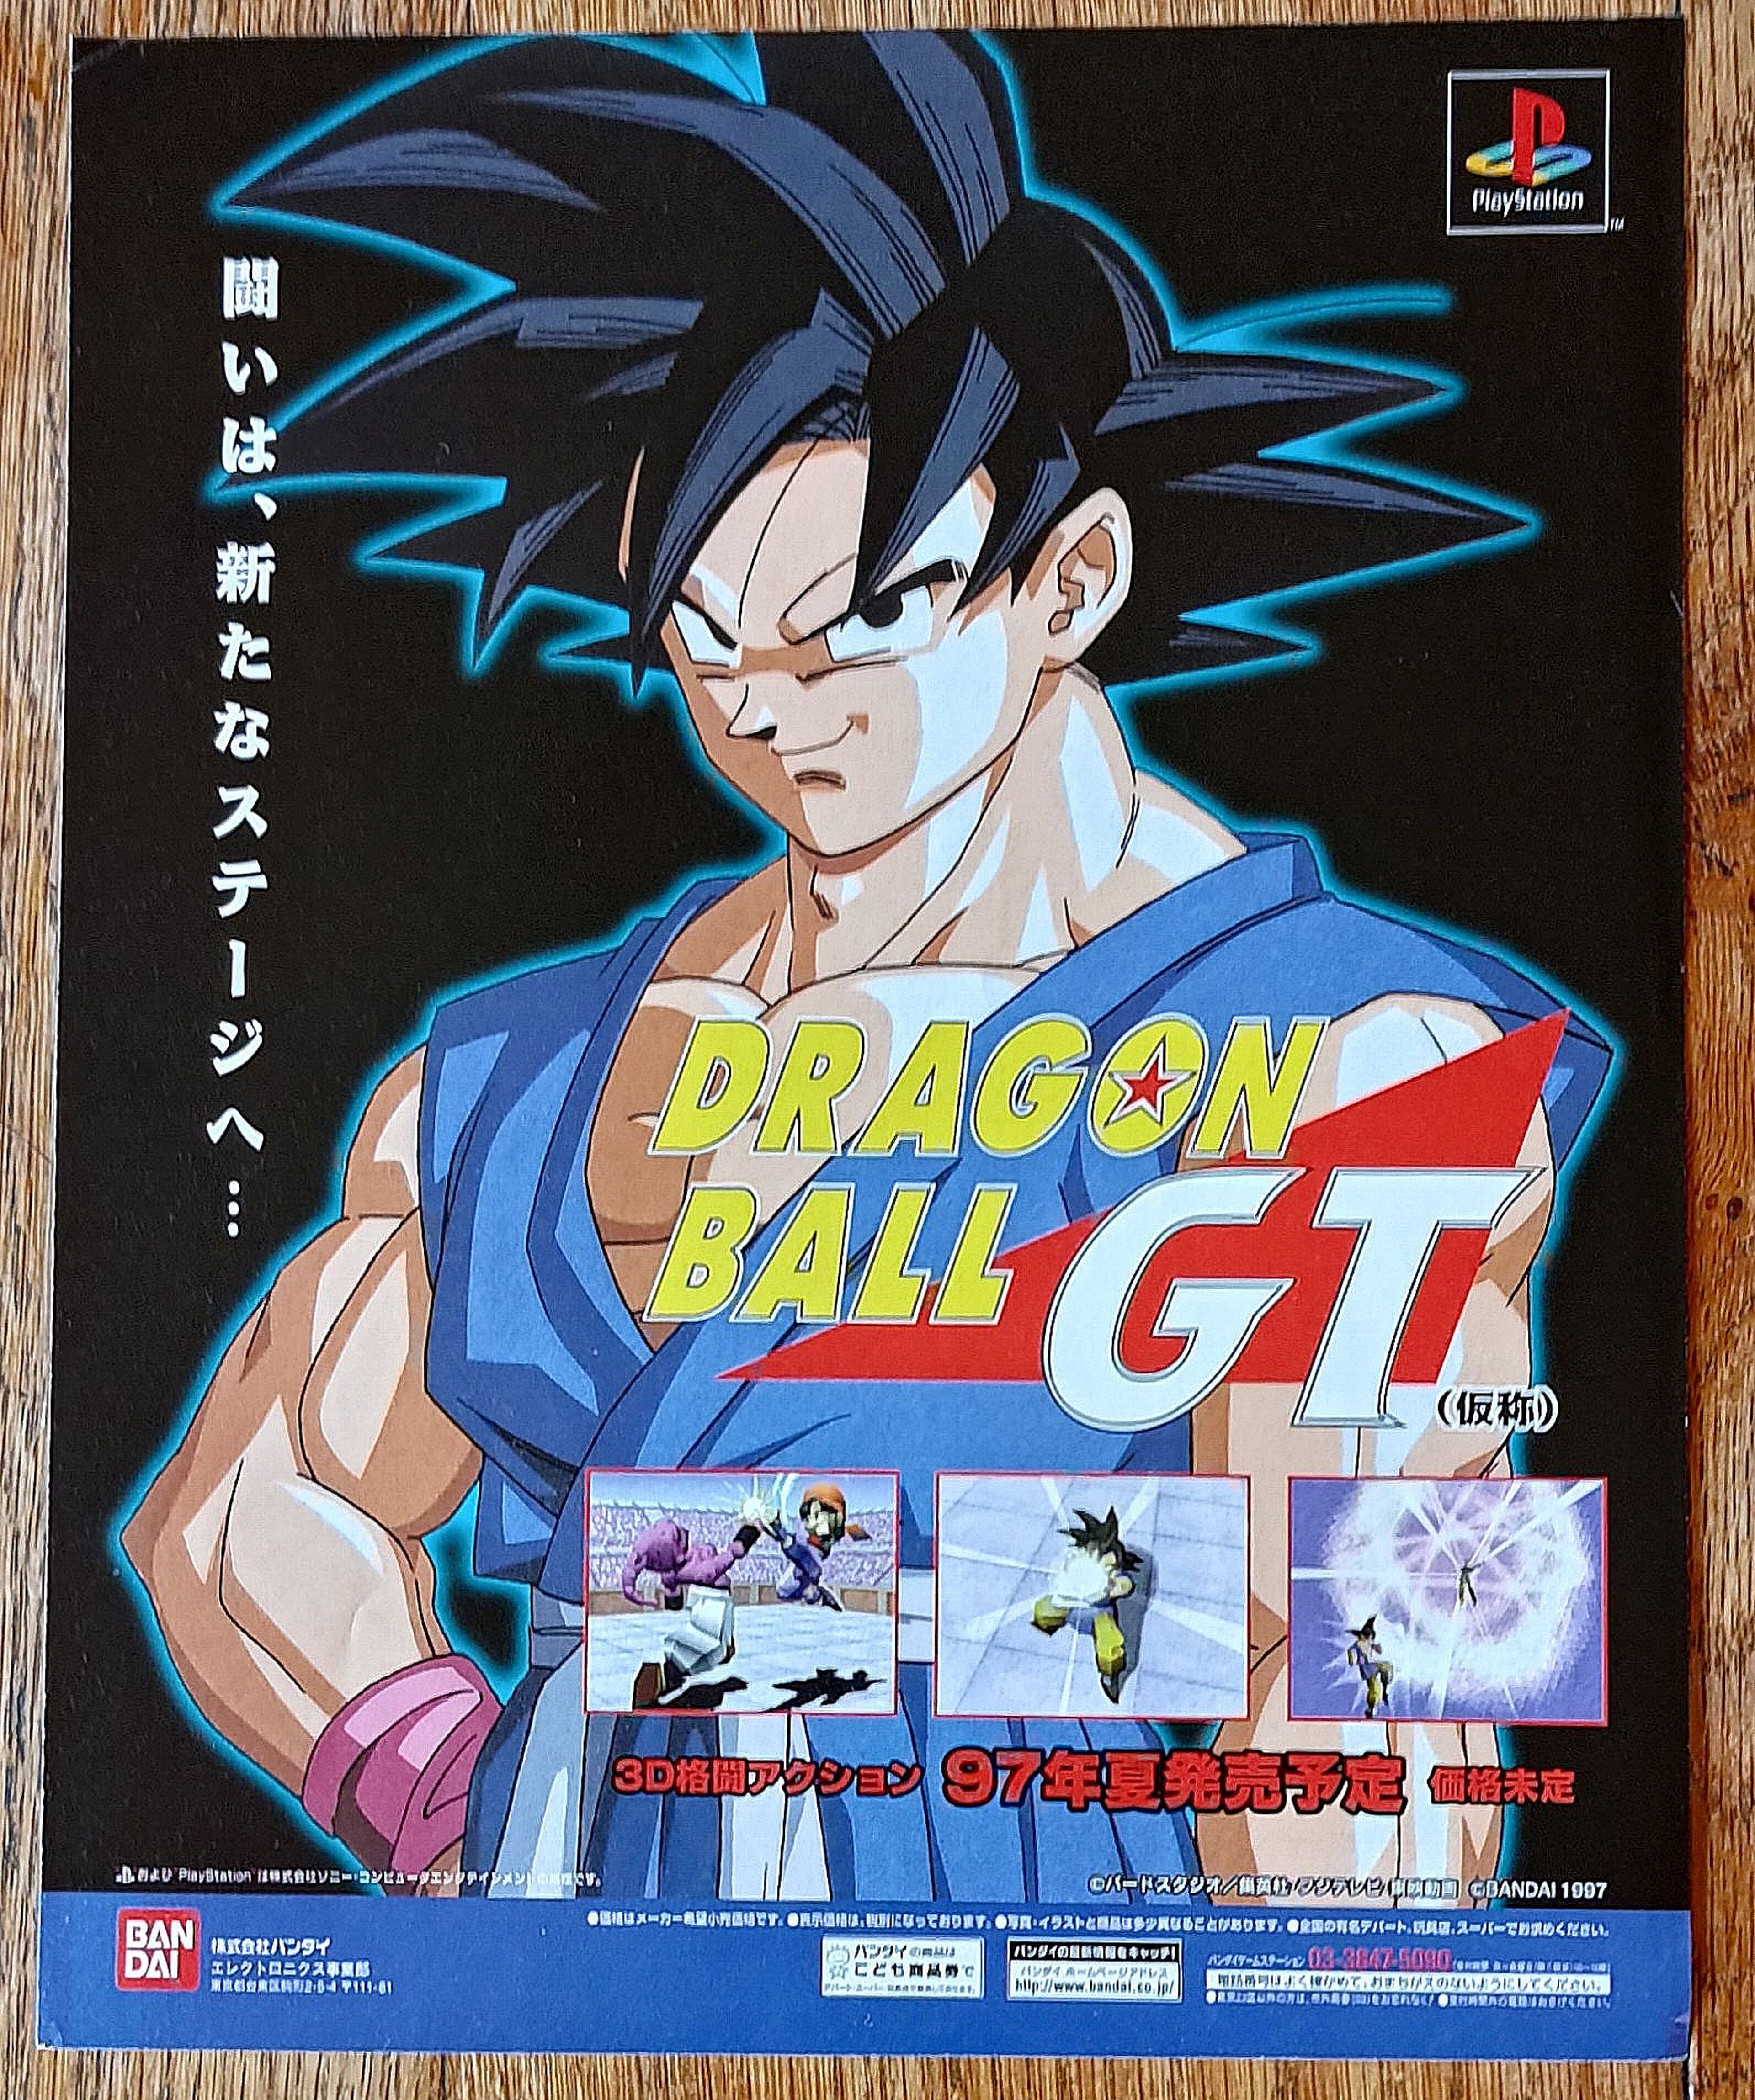 Dragon Ball Final Bout - El título original de este juego de Goku de PlayStation iba a ser muy diferente